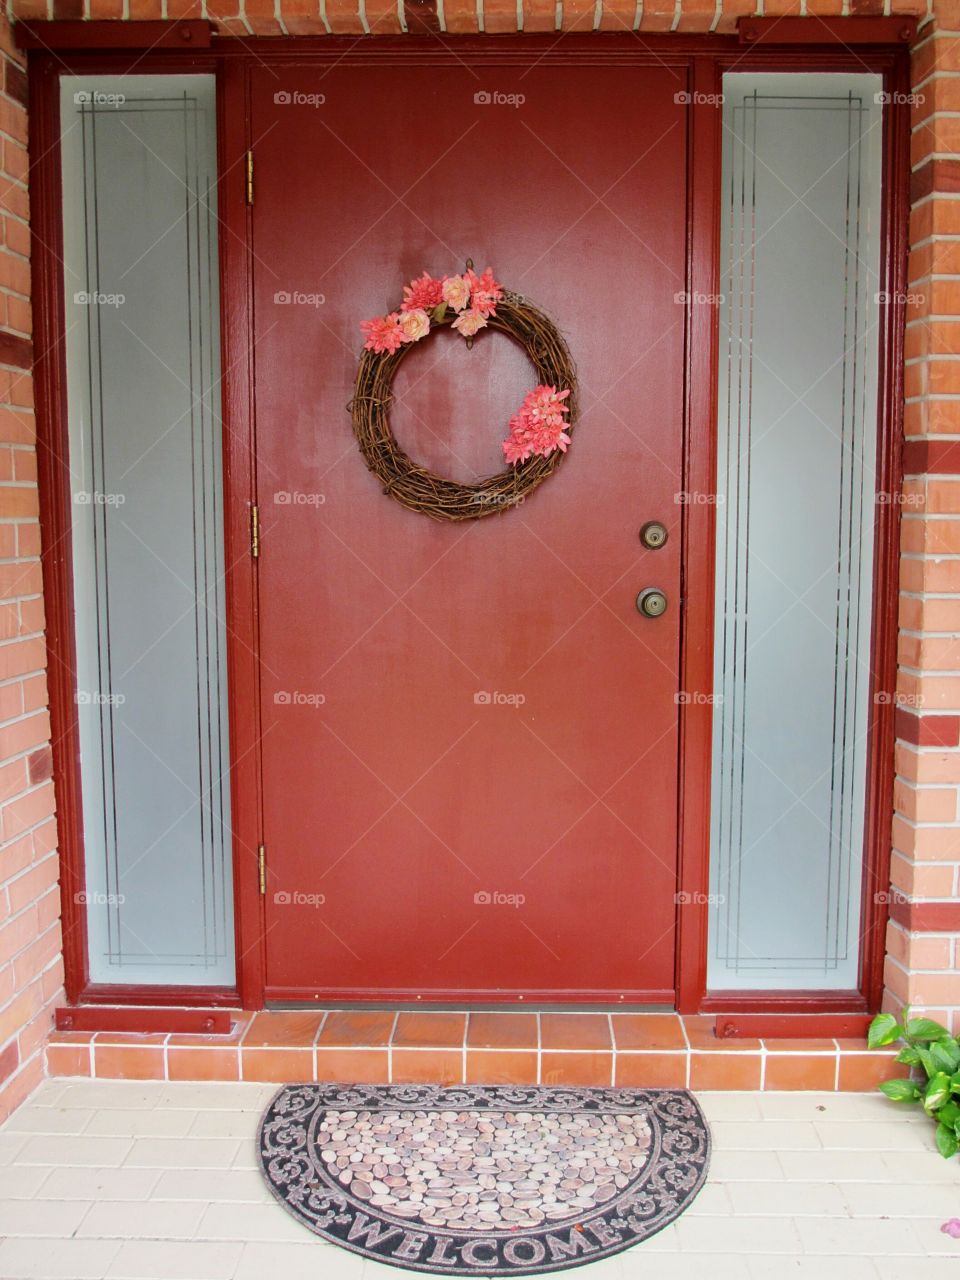 welcoming home's front door